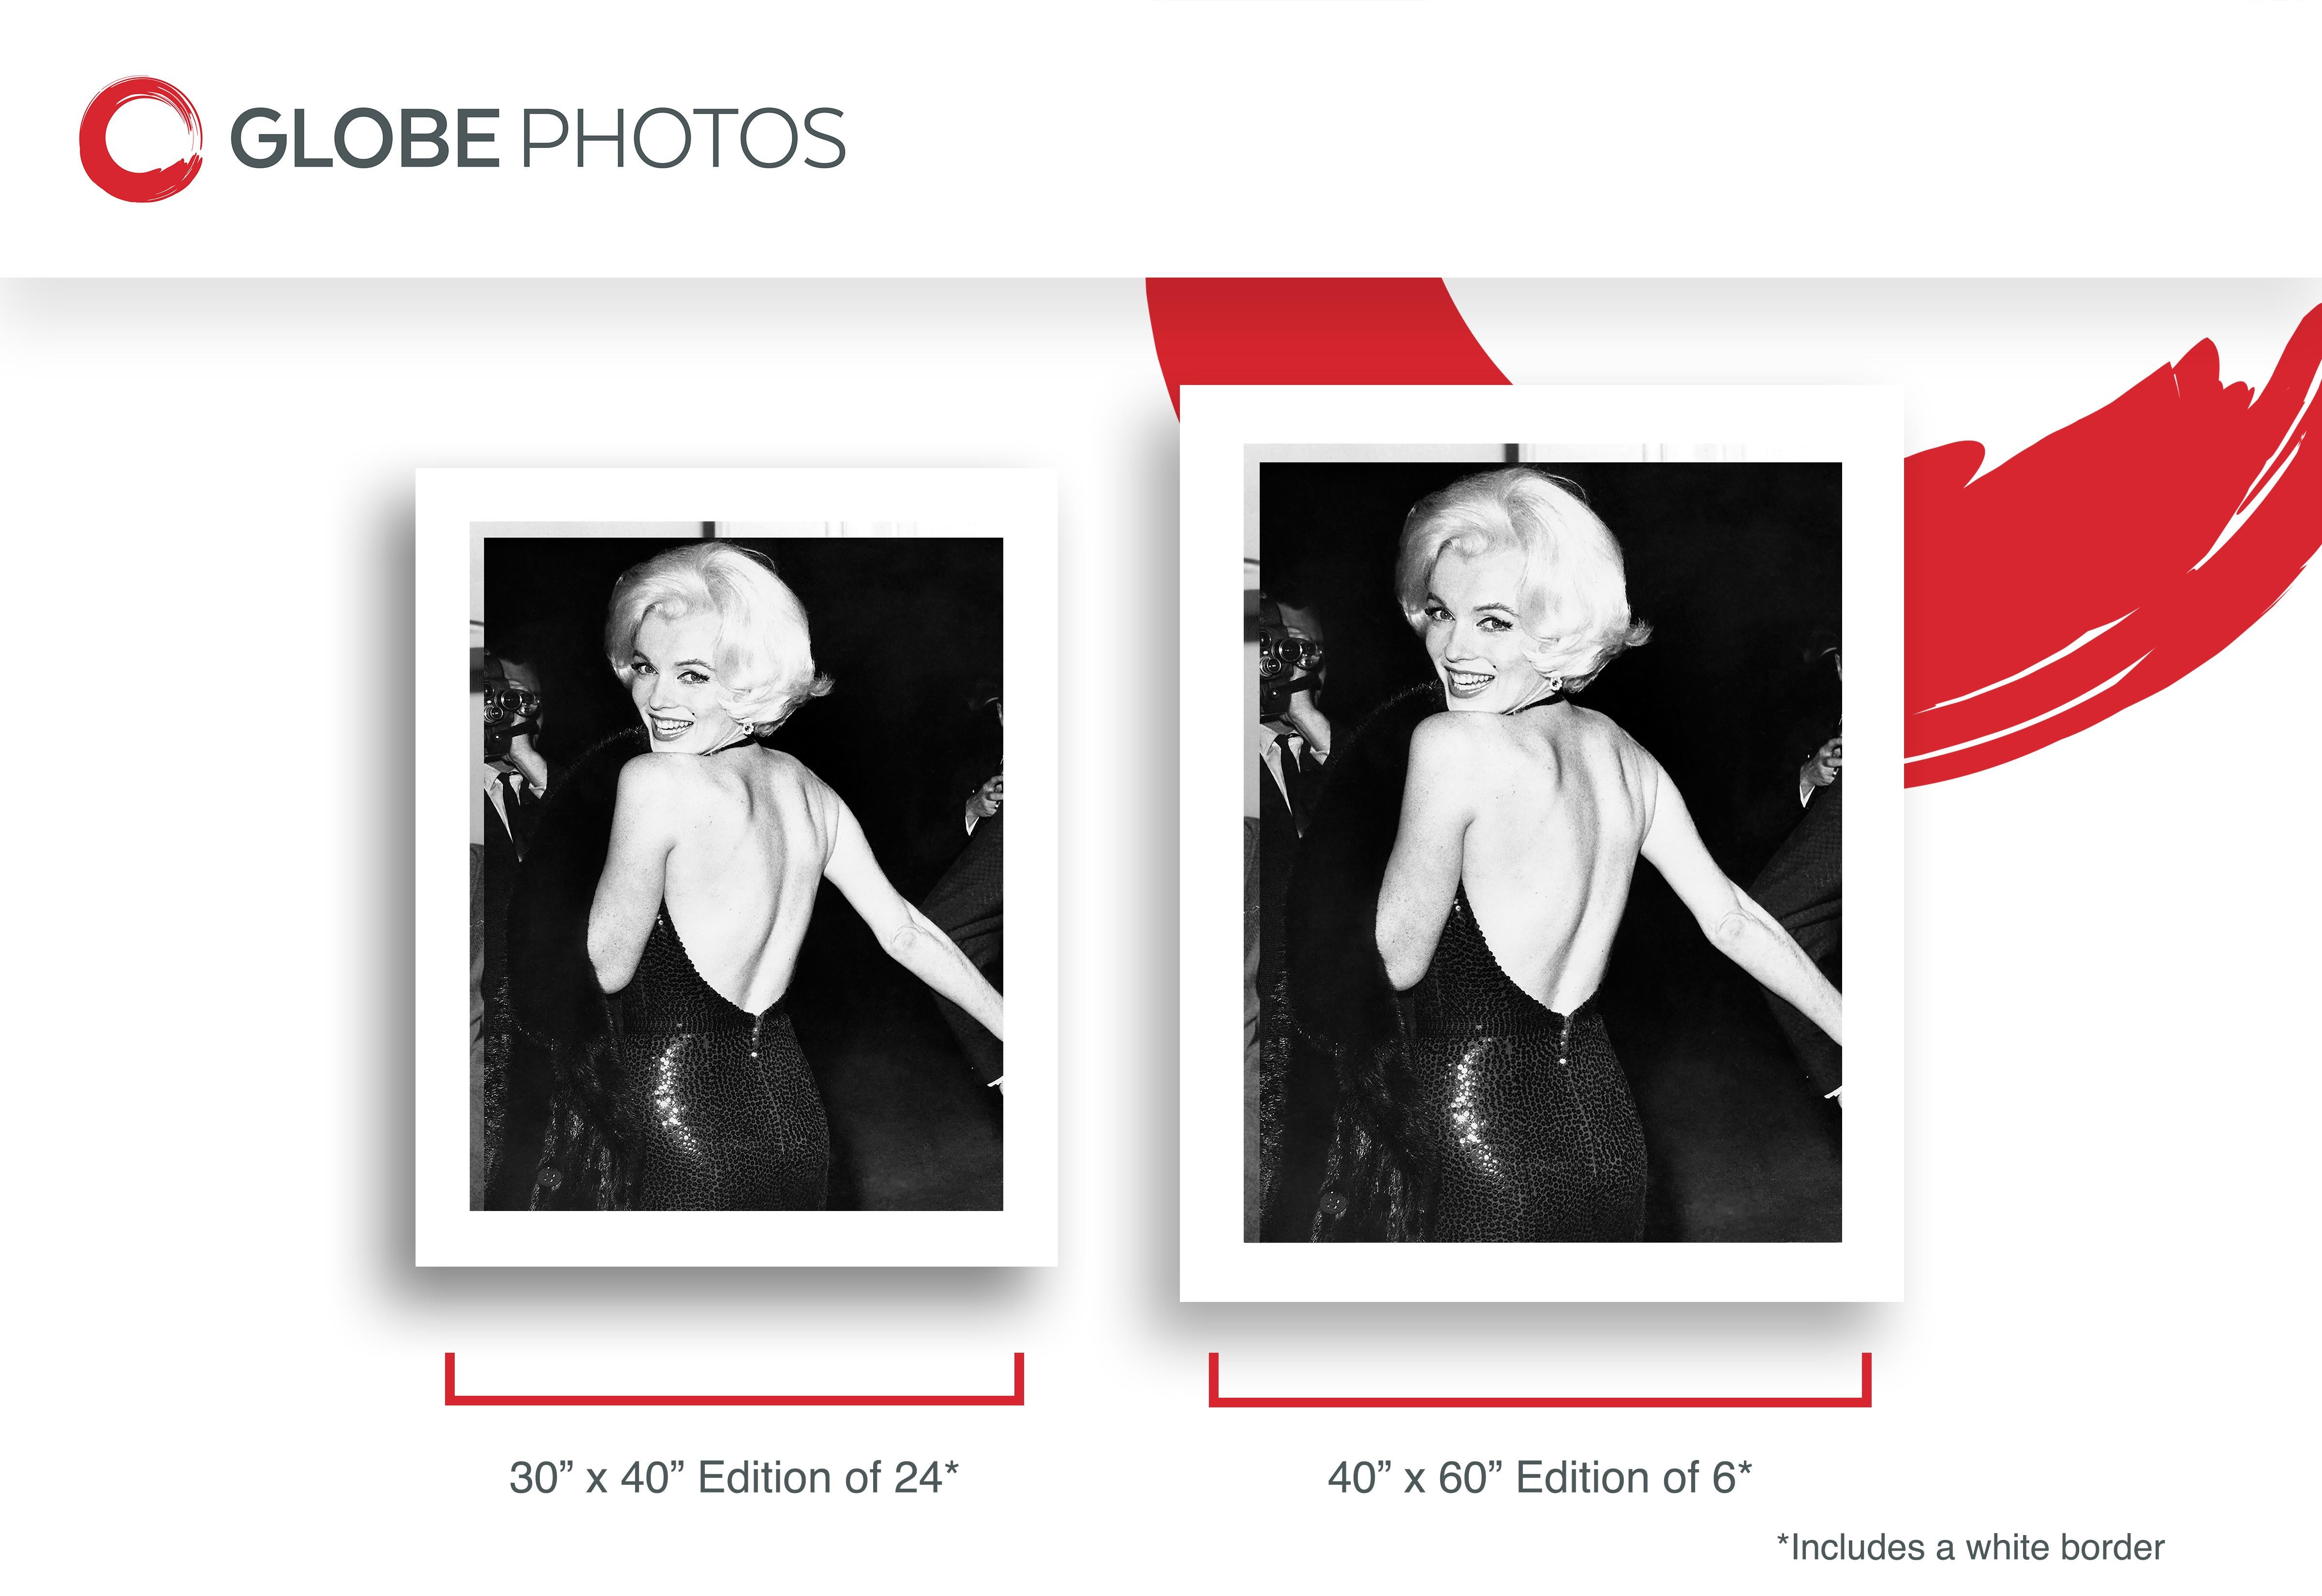 Diese schwarz-weiße Schnappschussaufnahme zeigt die Schauspielerin und Sexsymbol Marilyn Monroe in einem tief ausgeschnittenen schwarzen Kleid. Dieses Bild wurde aufgenommen, als Monroe von Fotografen umringt davonlief und mit ihrem typischen